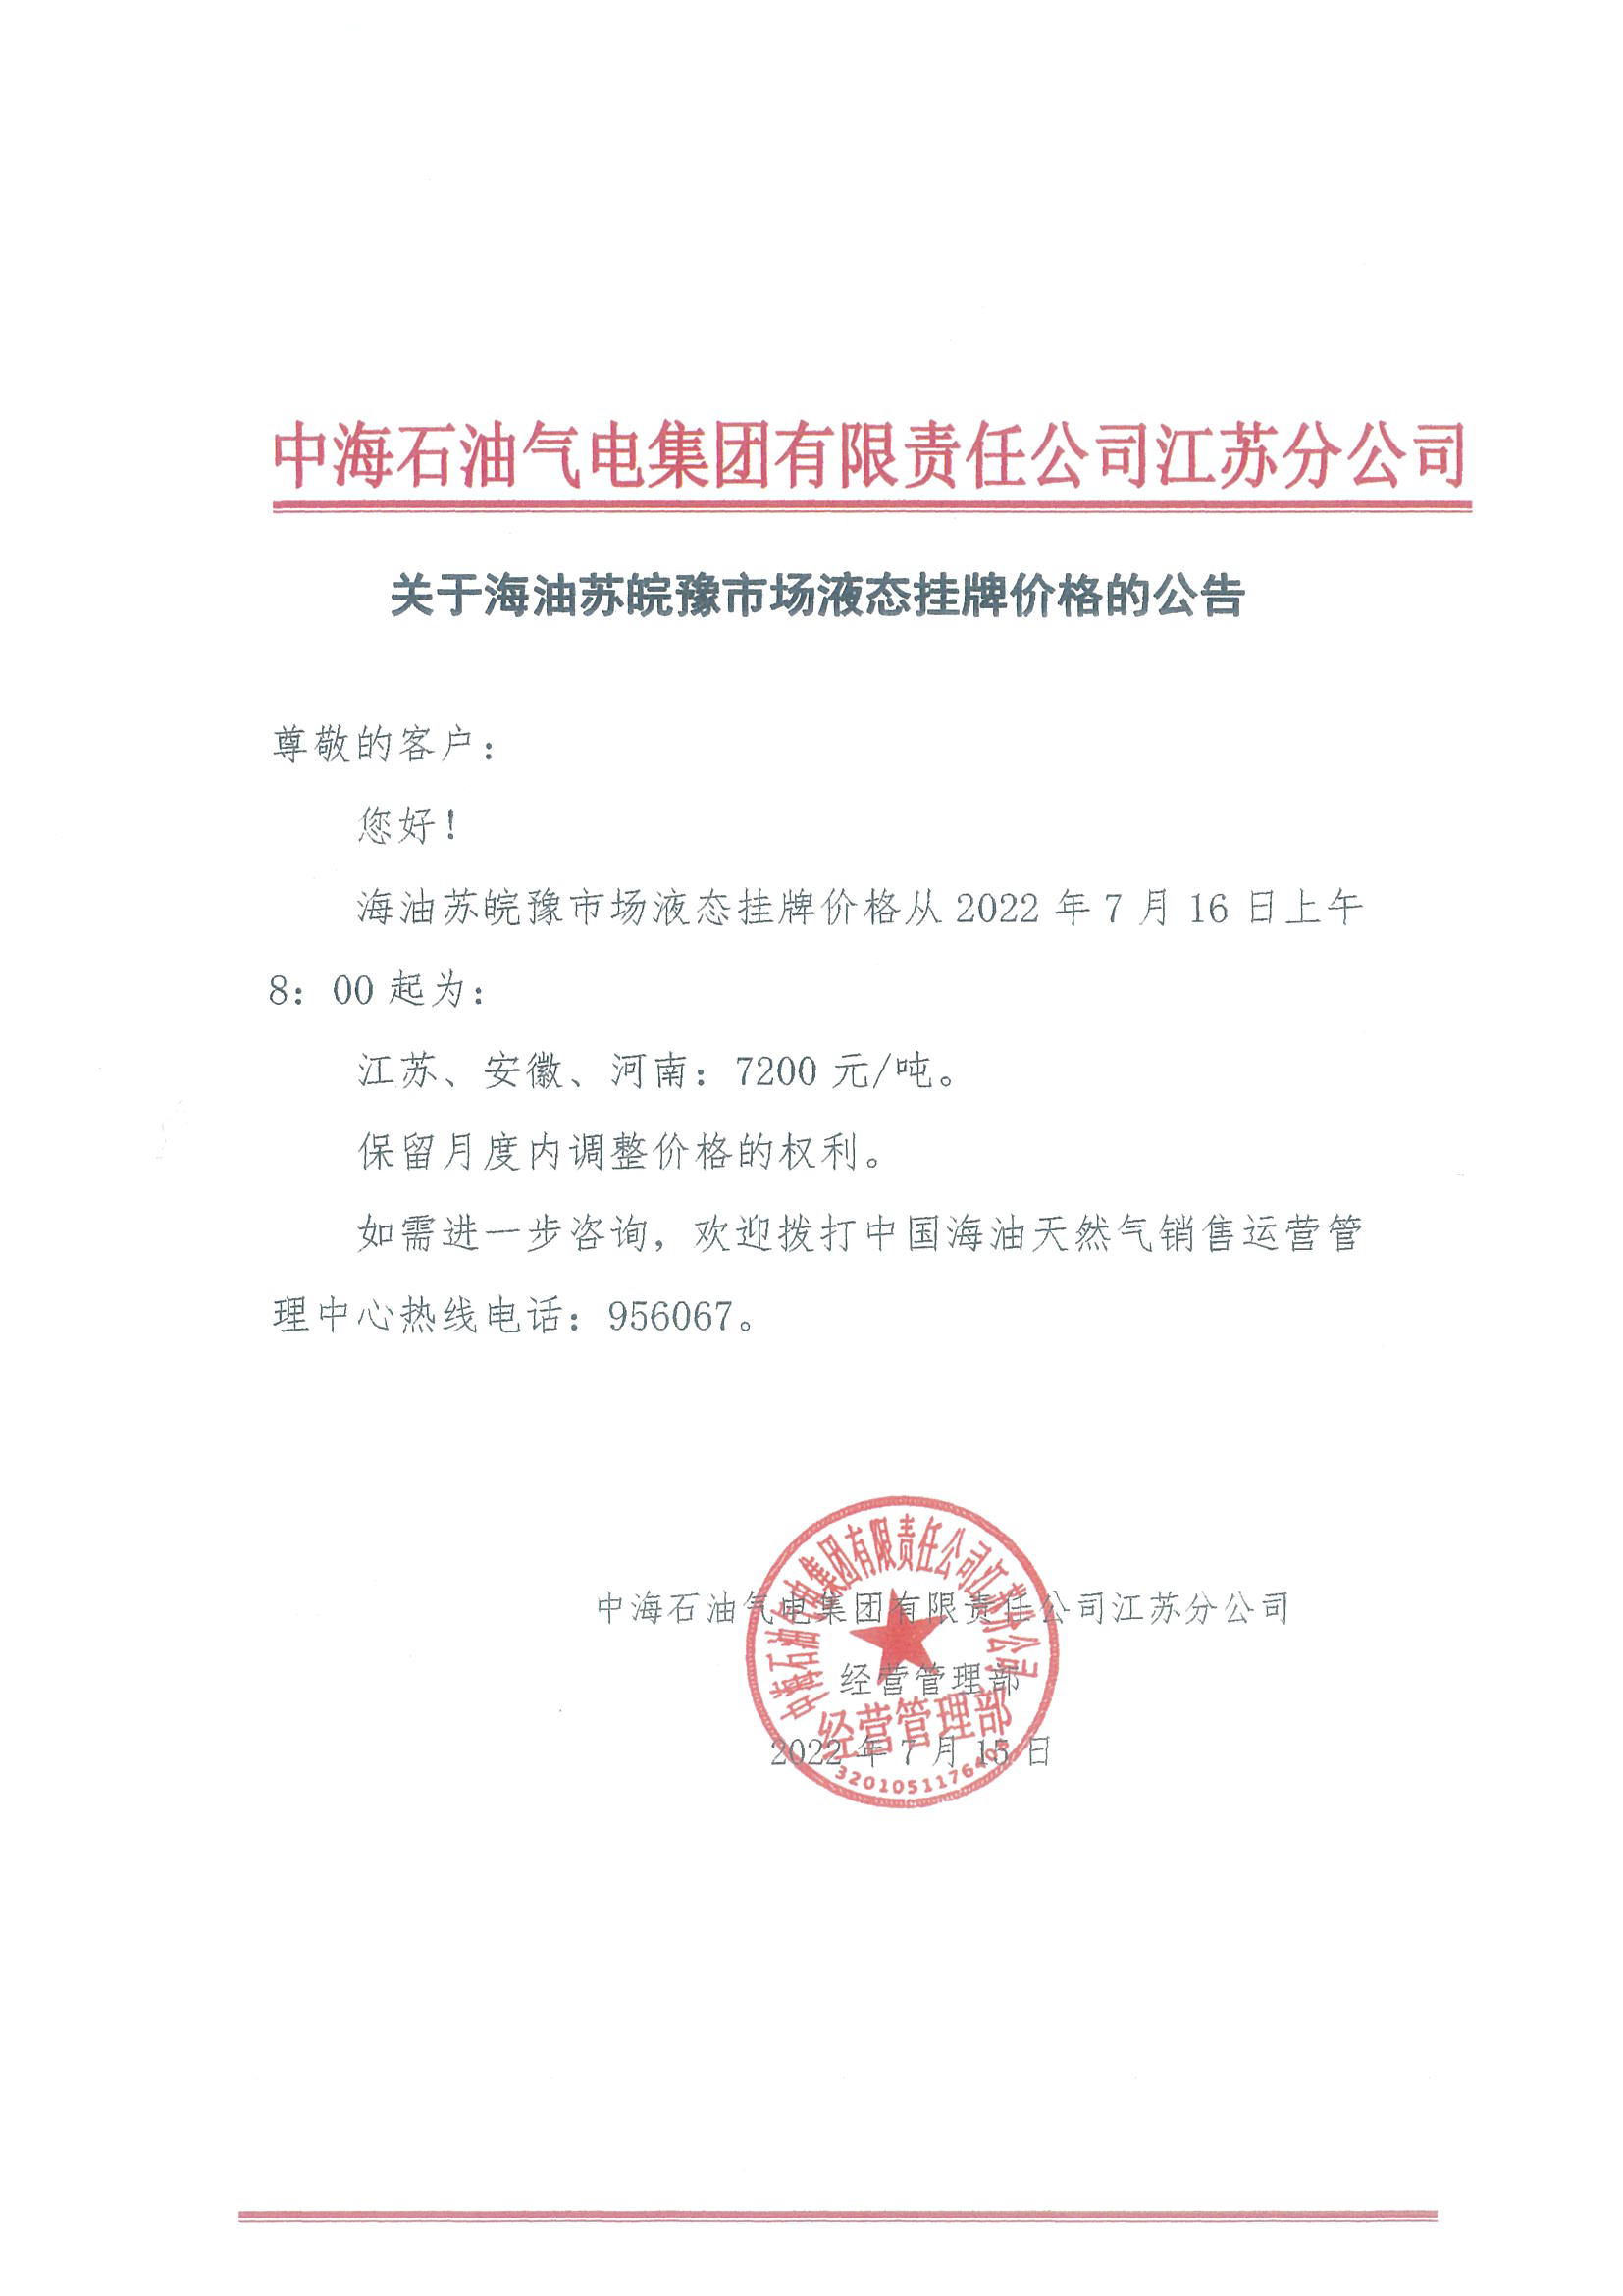 中海油江苏分公司关于7月16日华东苏皖市场价格调整公告.png